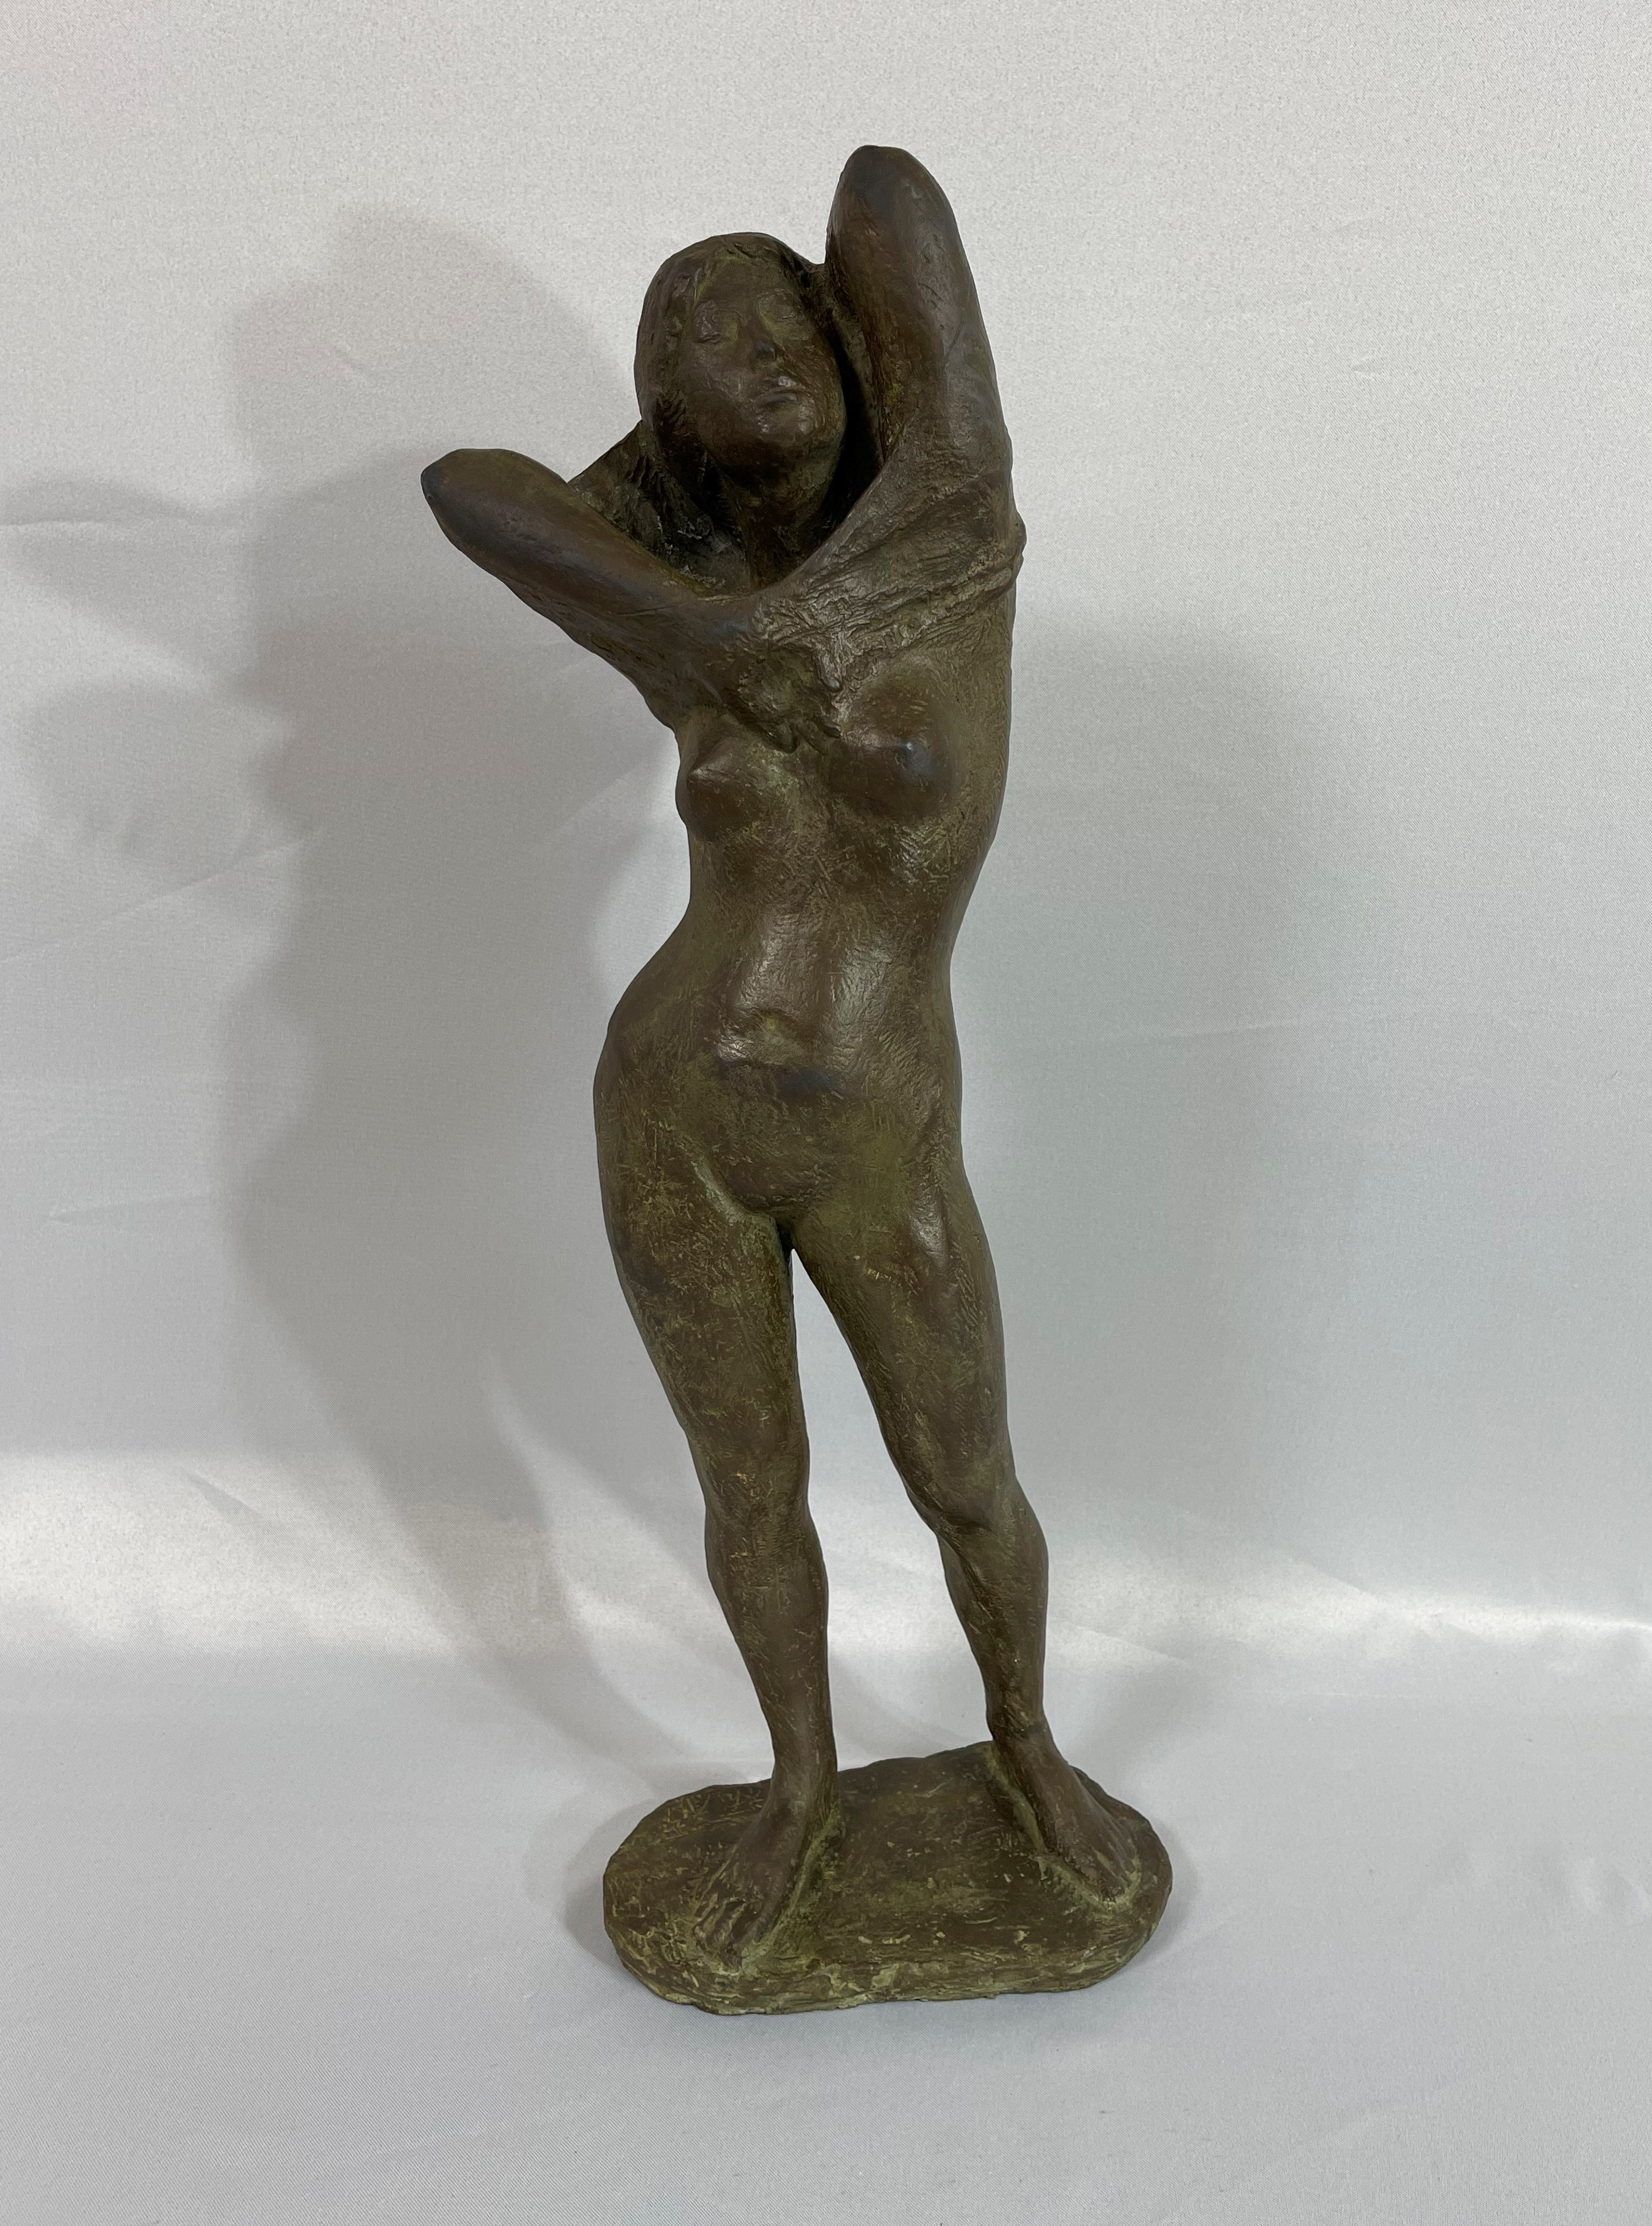 ブロンズ像 裸婦像 女性像 置物 TAE 昌銘 重さ約3.6kg M 3703-